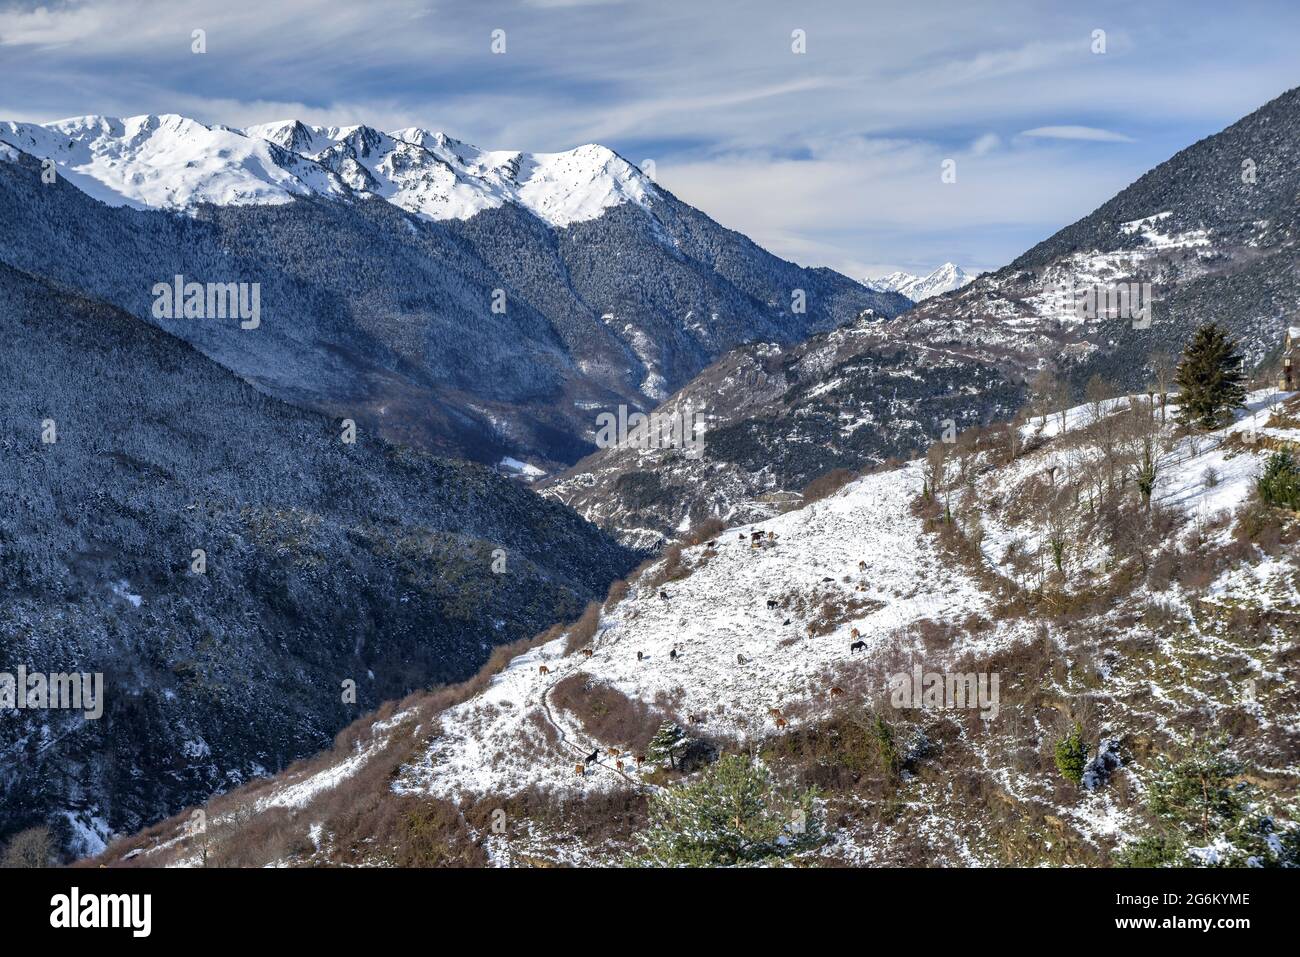 Snowy Aran Valley in winter, seen from the village of Mont (Aran Valley, Catalonia, Spain, Pyrenees) ESP: Valle de Arán nevado en invierno (Pirineos) Stock Photo